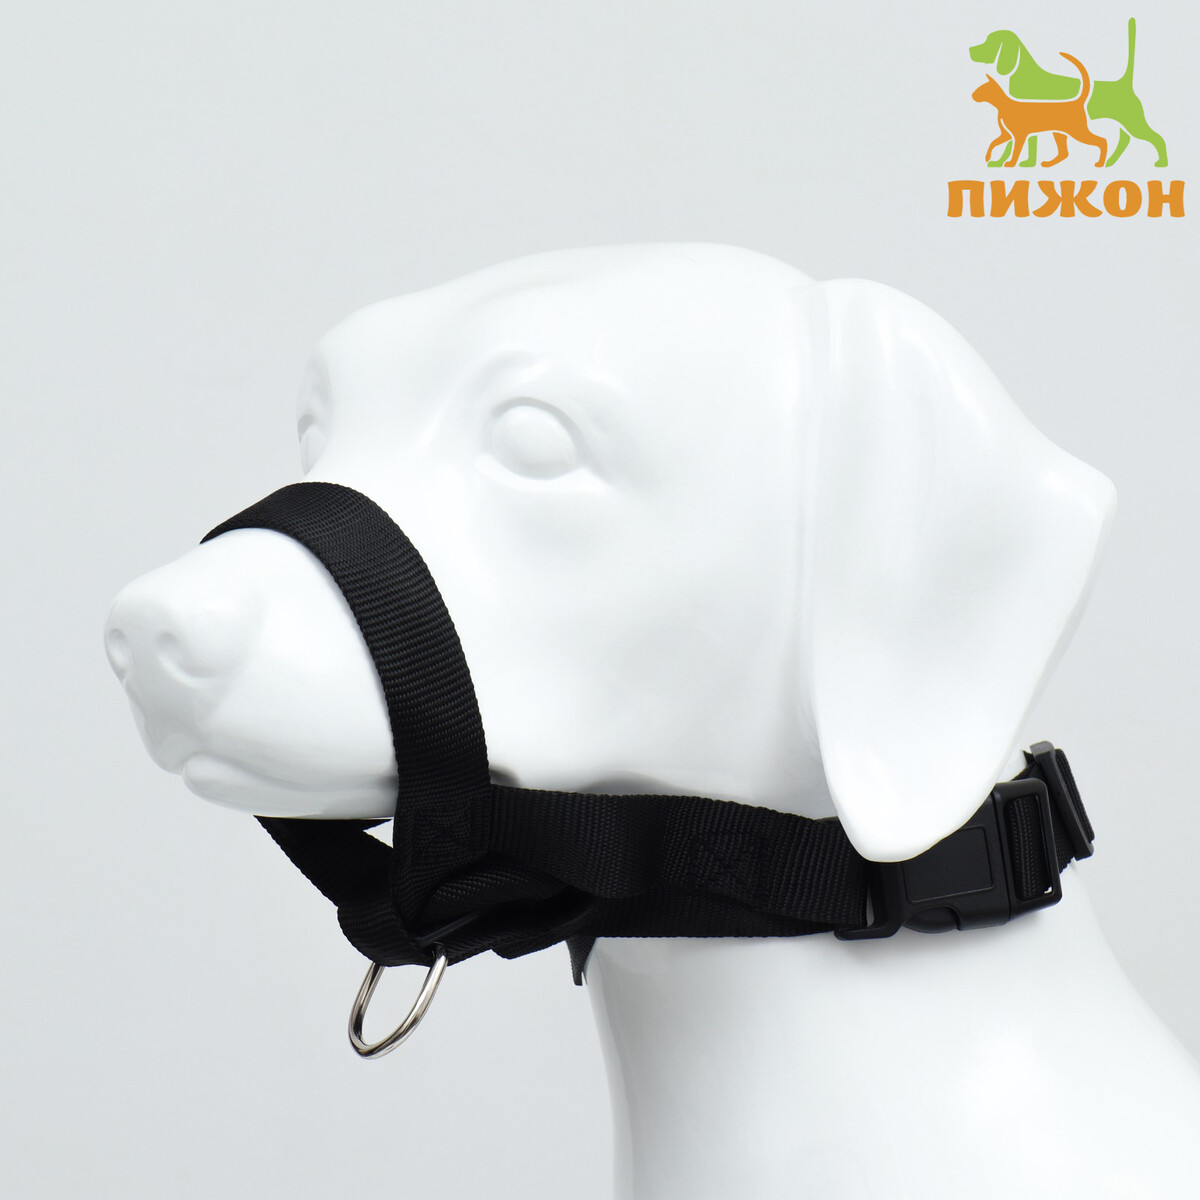 Недоуздок-намордник для собак строгий, размер xxl, оm 28-38 см, ош 22-30 см, черный намордник для собак 5 с трехсторонним ремешком термопластичный каучук